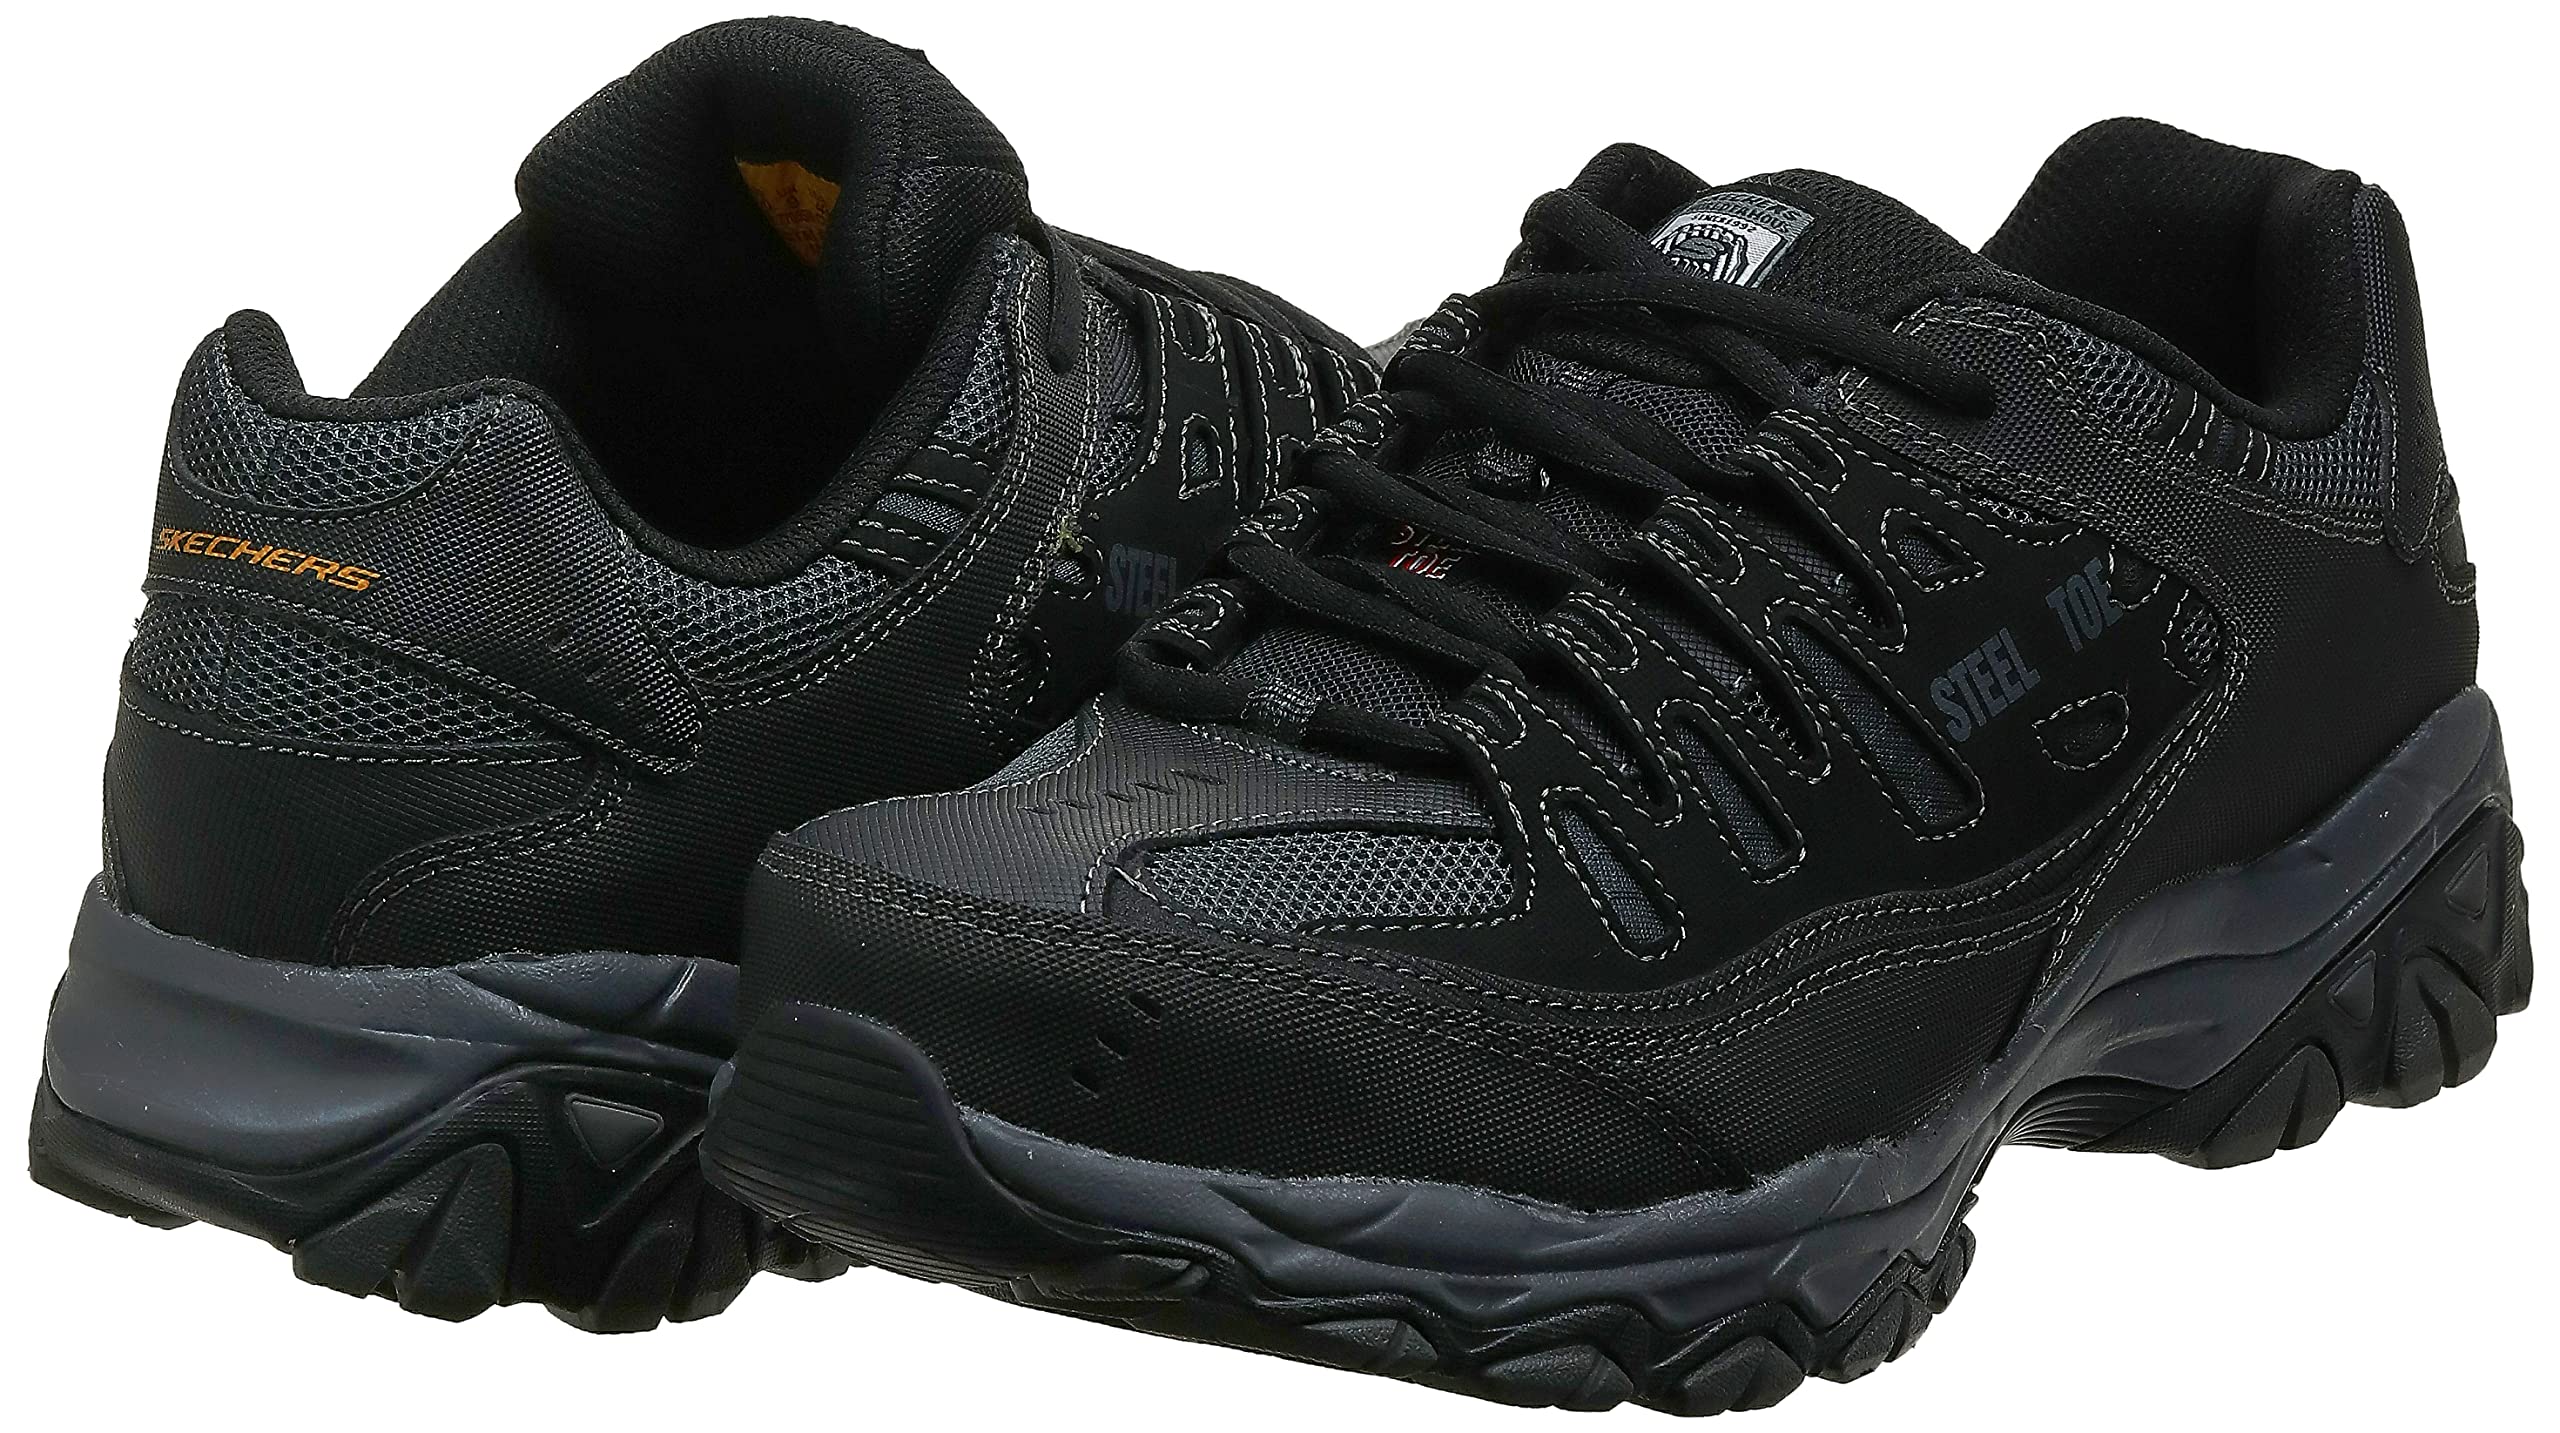 Skechers Men's Cankton Steel Toe Industrial Shoe, Black/Charcoal, 10.5 Wide